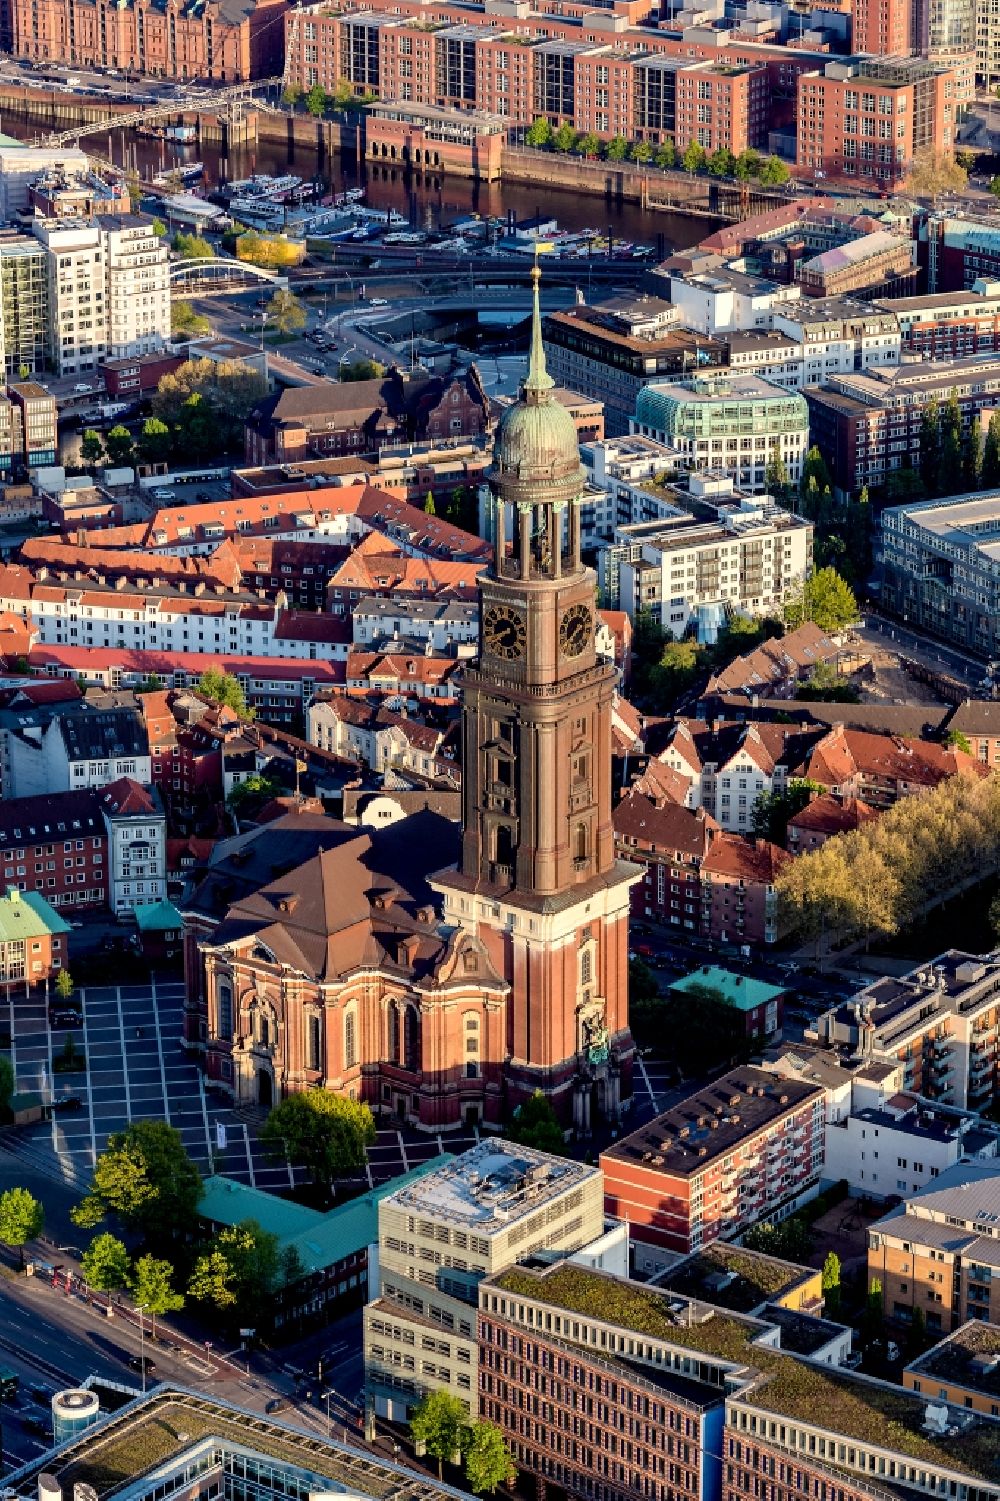 Luftbild Hamburg - Hauptkirche Sankt Michaelis in Hamburg